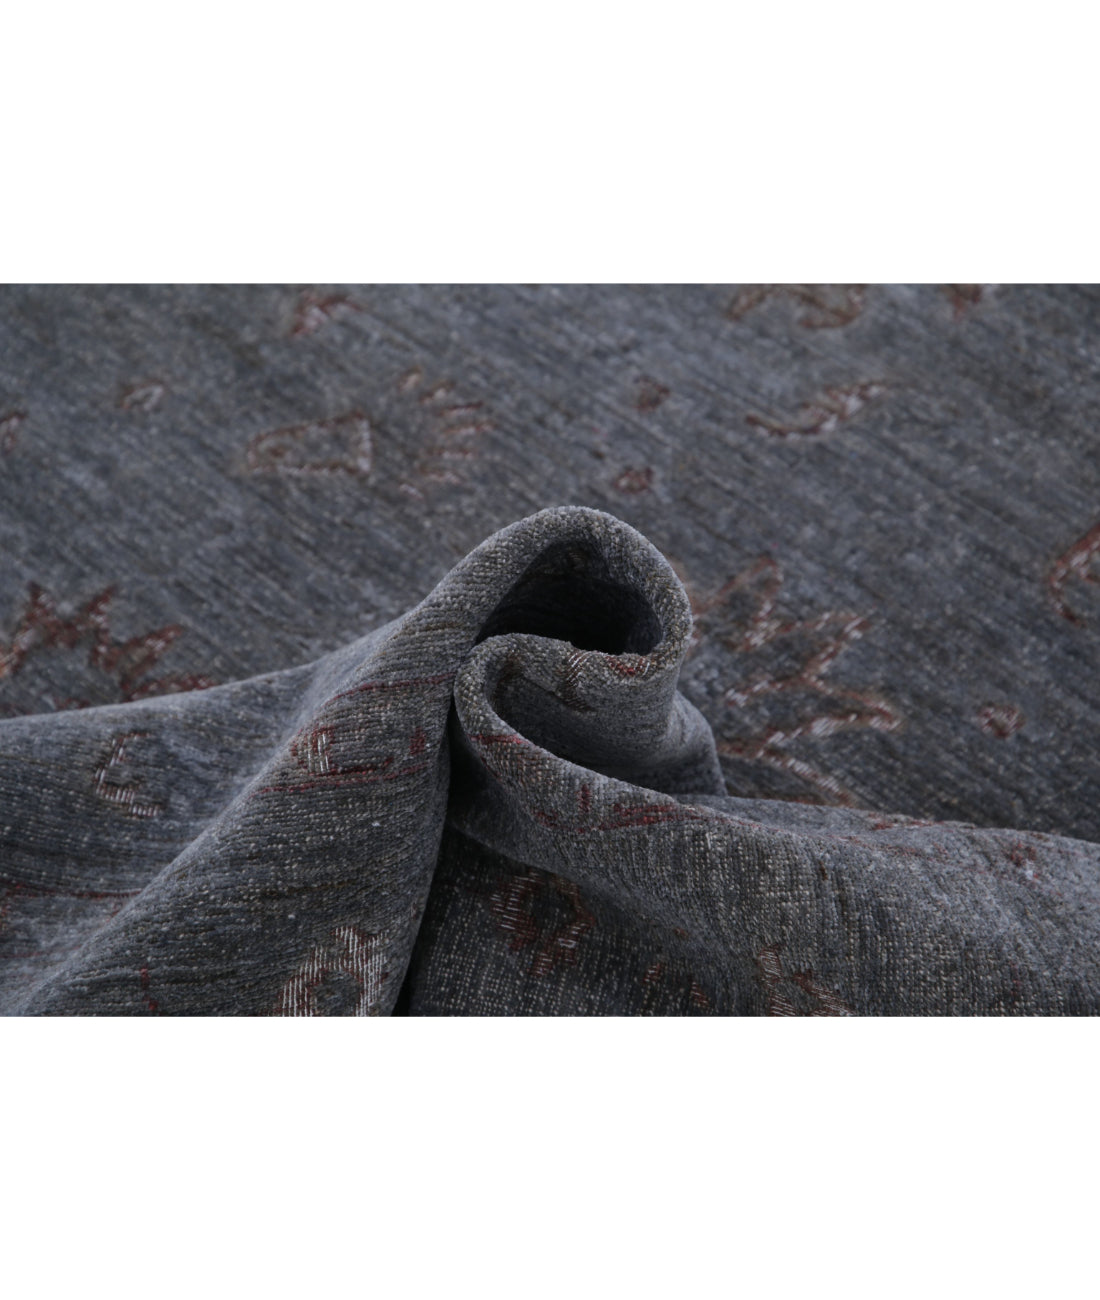 Hand Knotted Onyx Wool Rug - 6'3'' x 10'1'' 6'3'' x 10'1'' (188 X 303) / Grey / Grey